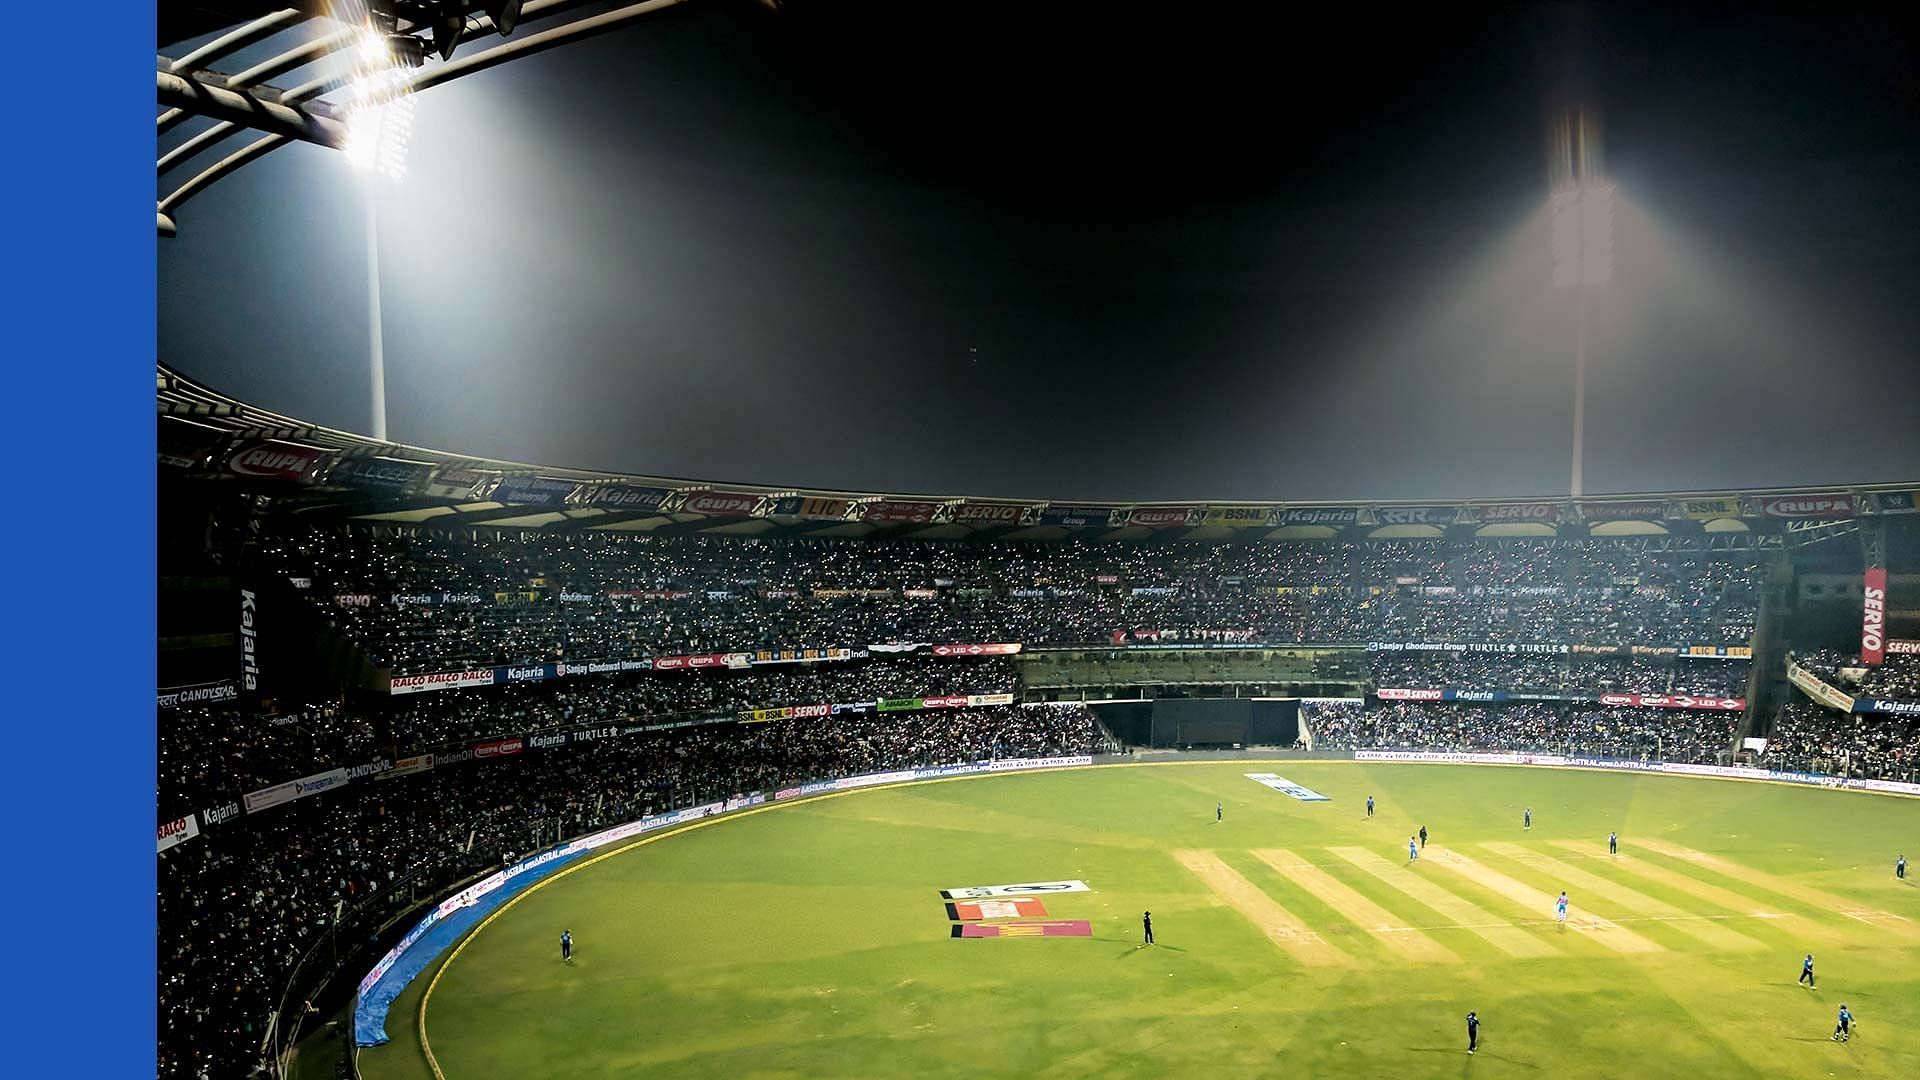 Wankhede Stadium in Mumbai. (PC: GQ India)